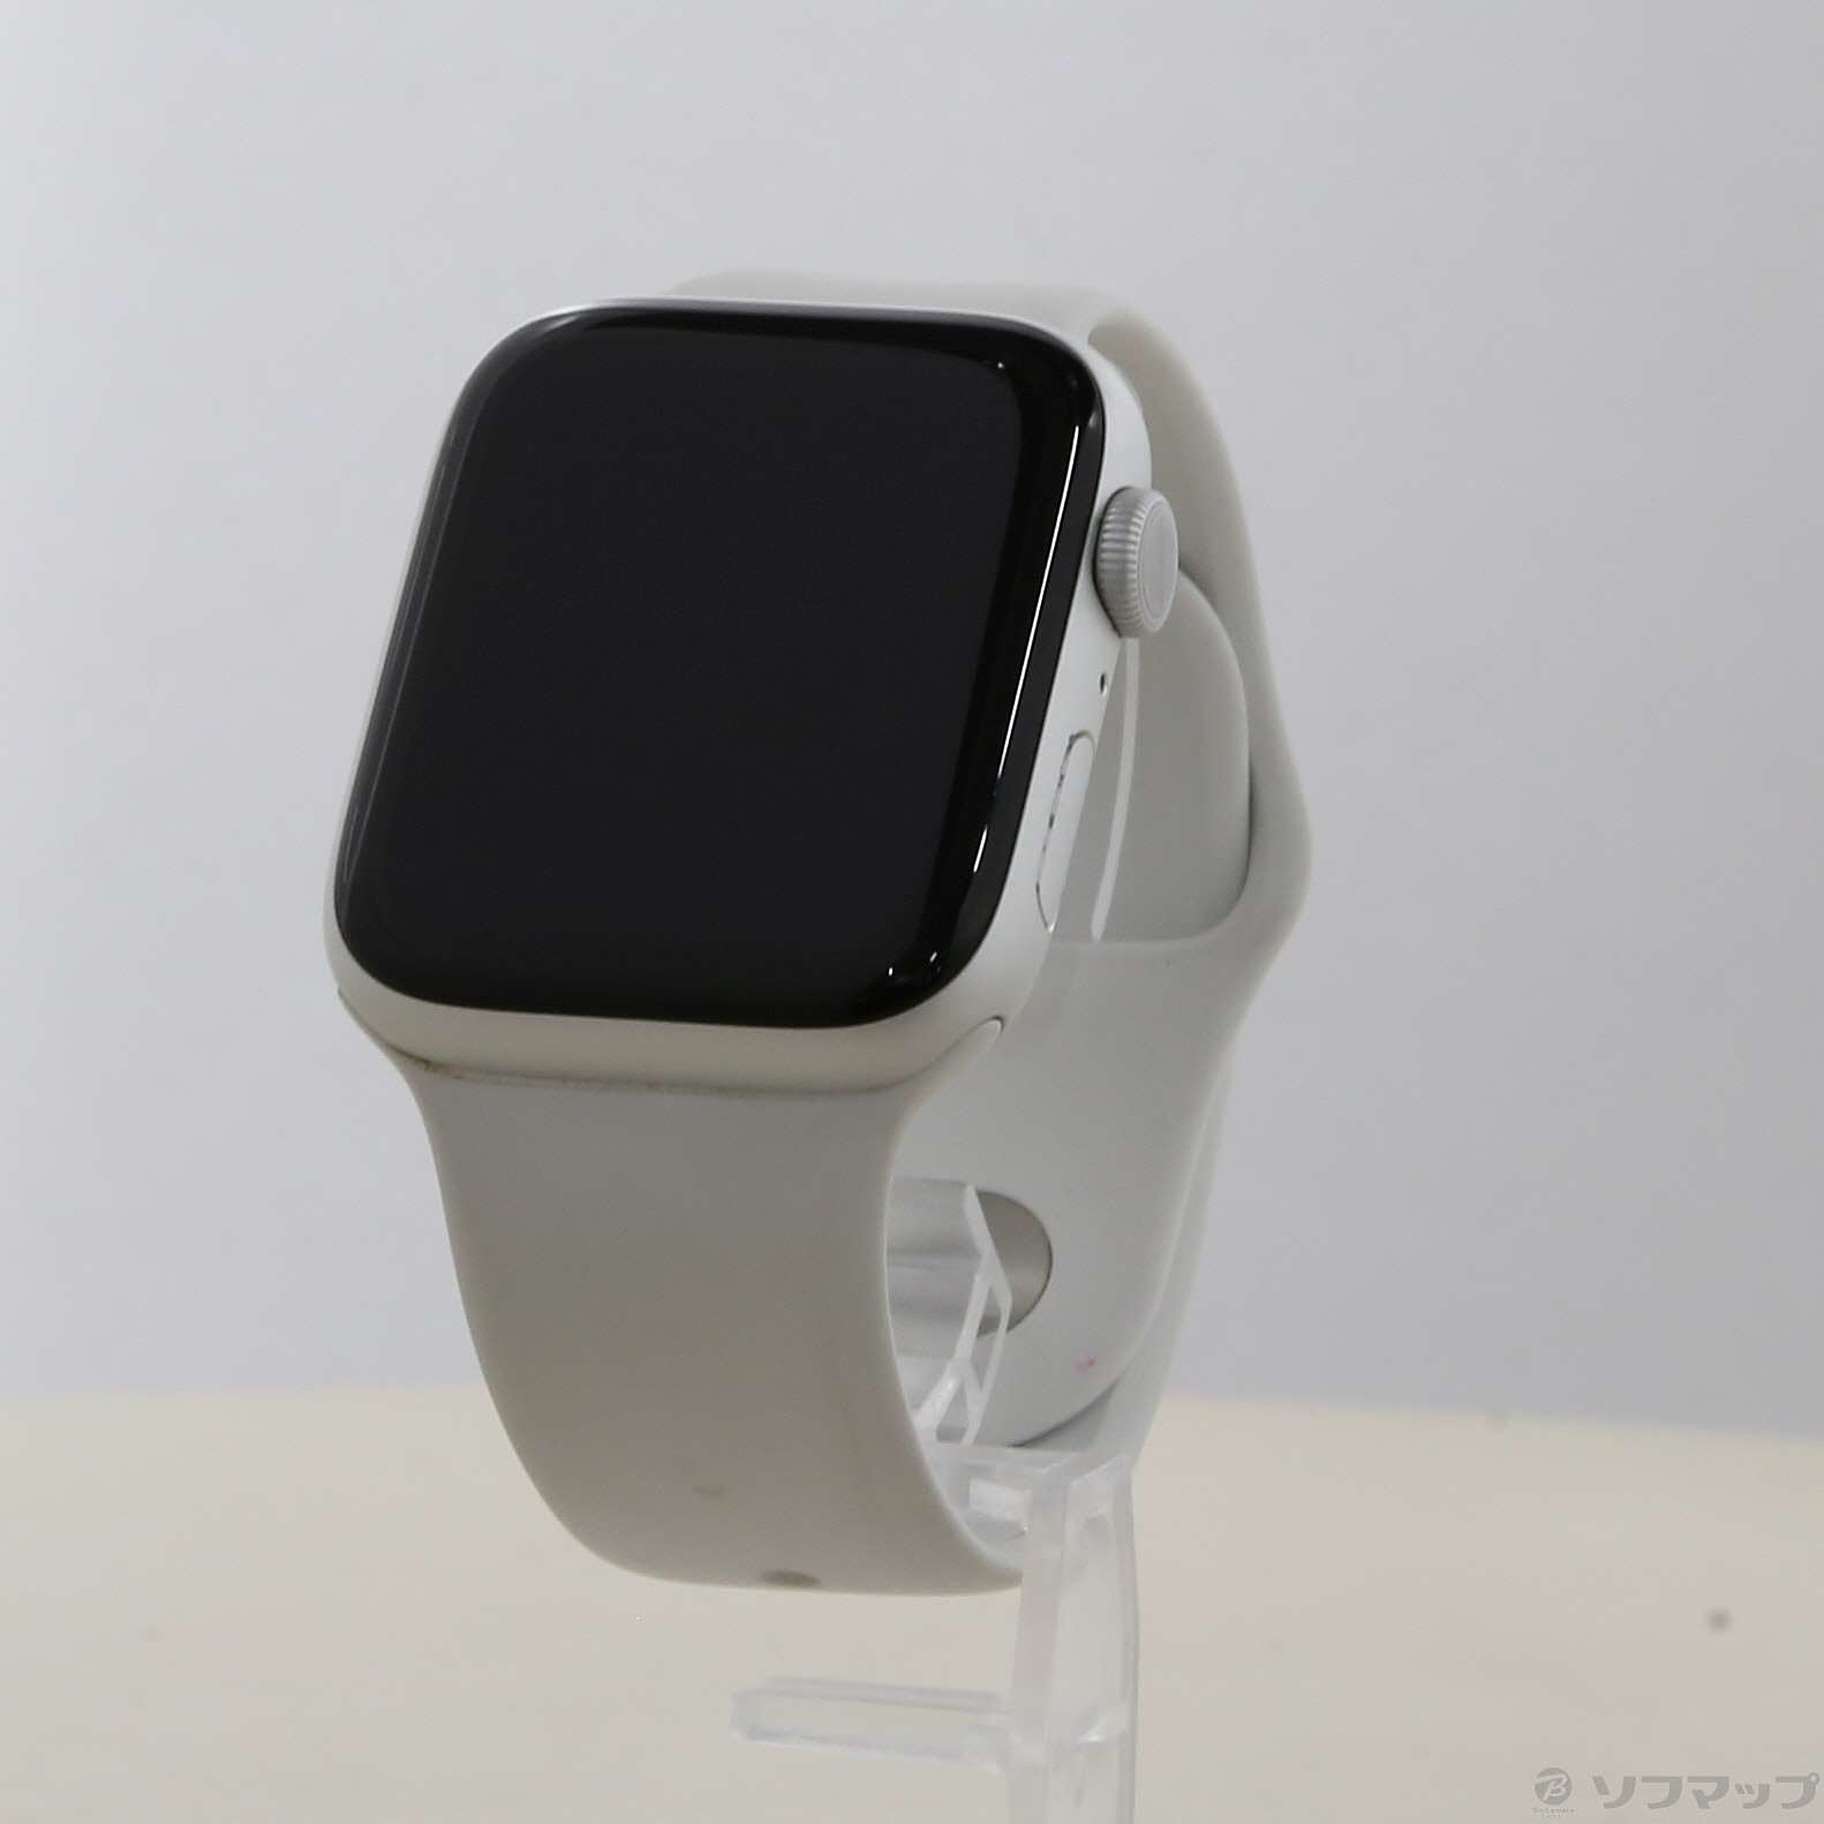 Apple(アップル) Apple Watch Series 5 GPS 44mm シルバーアルミニウム